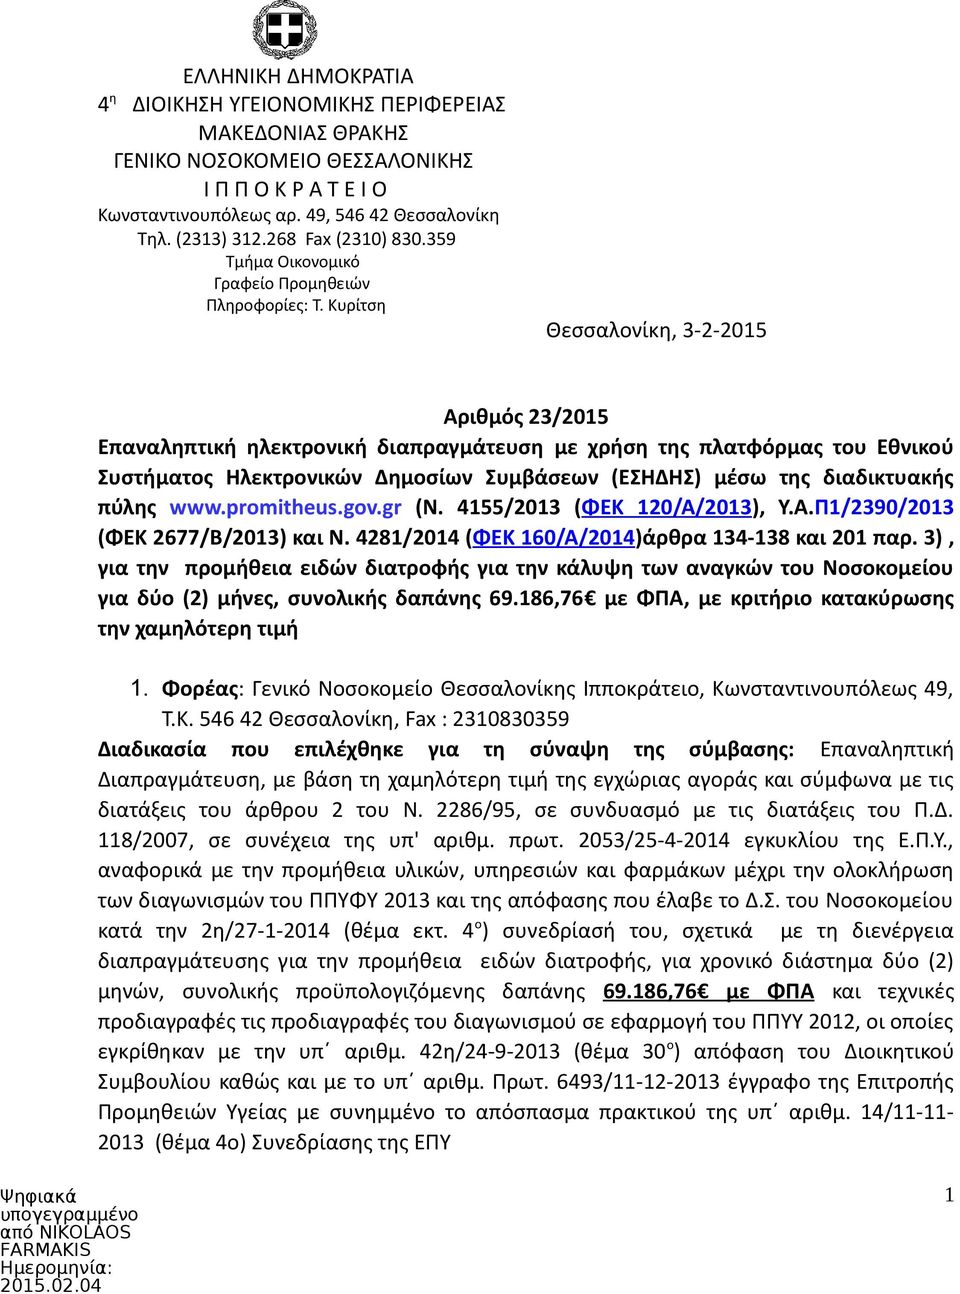 Κυρίτση Θεσσαλονίκη, 3-2-2015 Αριθμός 23/2015 Επαναληπτική ηλεκτρονική διαπραγμάτευση με χρήση της πλατφόρμας του Εθνικού Συστήματος Ηλεκτρονικών Δημοσίων Συμβάσεων (ΕΣΗΔΗΣ) μέσω της διαδικτυακής